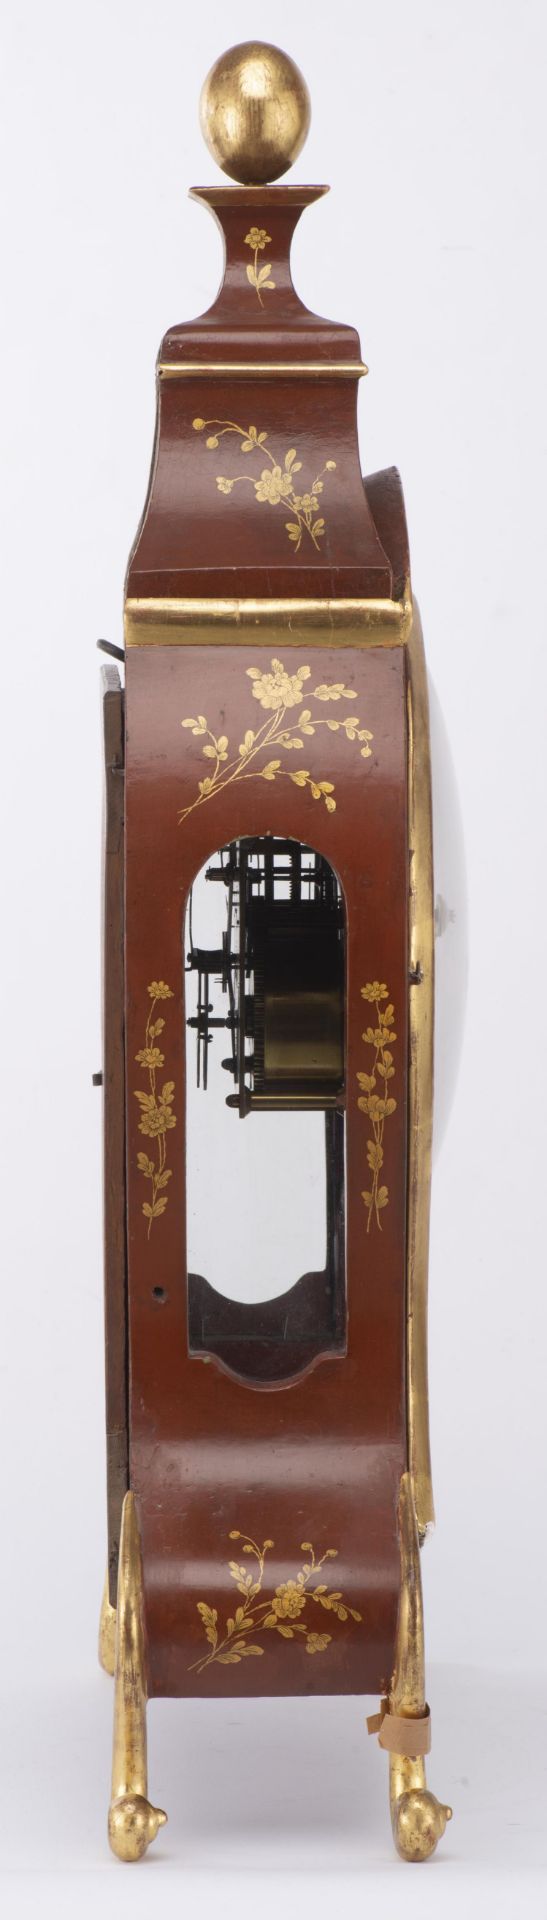 Pendule Neuchâteloise à boîte laquée rouge, décor à l'or de fleurettes, cadran [...] - Image 5 of 12